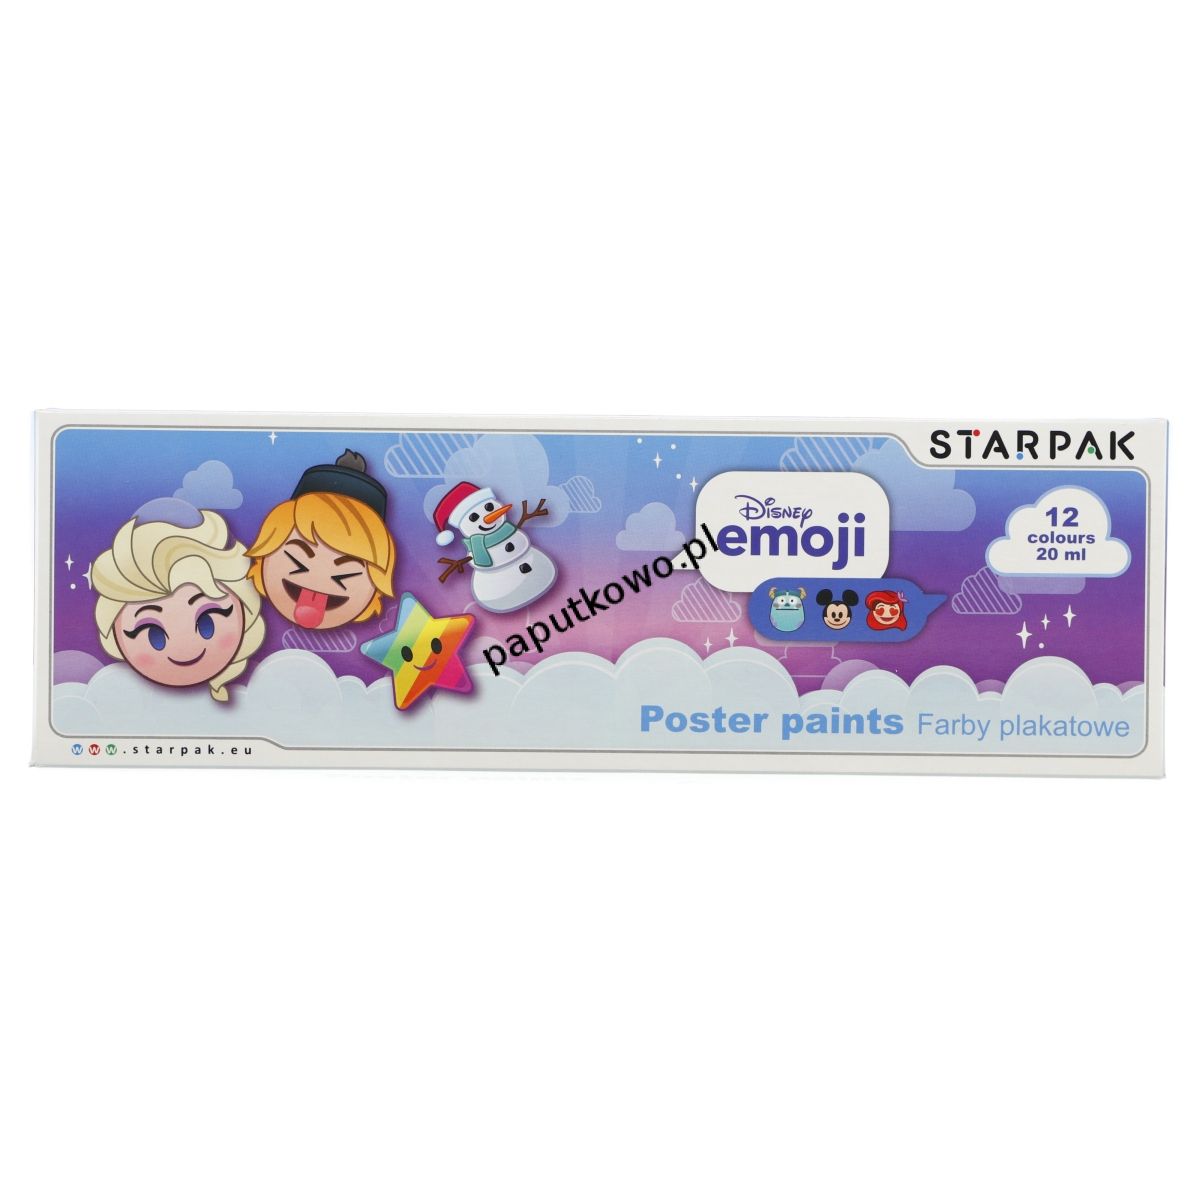 Farby plakatowe Starpak Emoji Frozen 20 ml 12 kol. (397924)